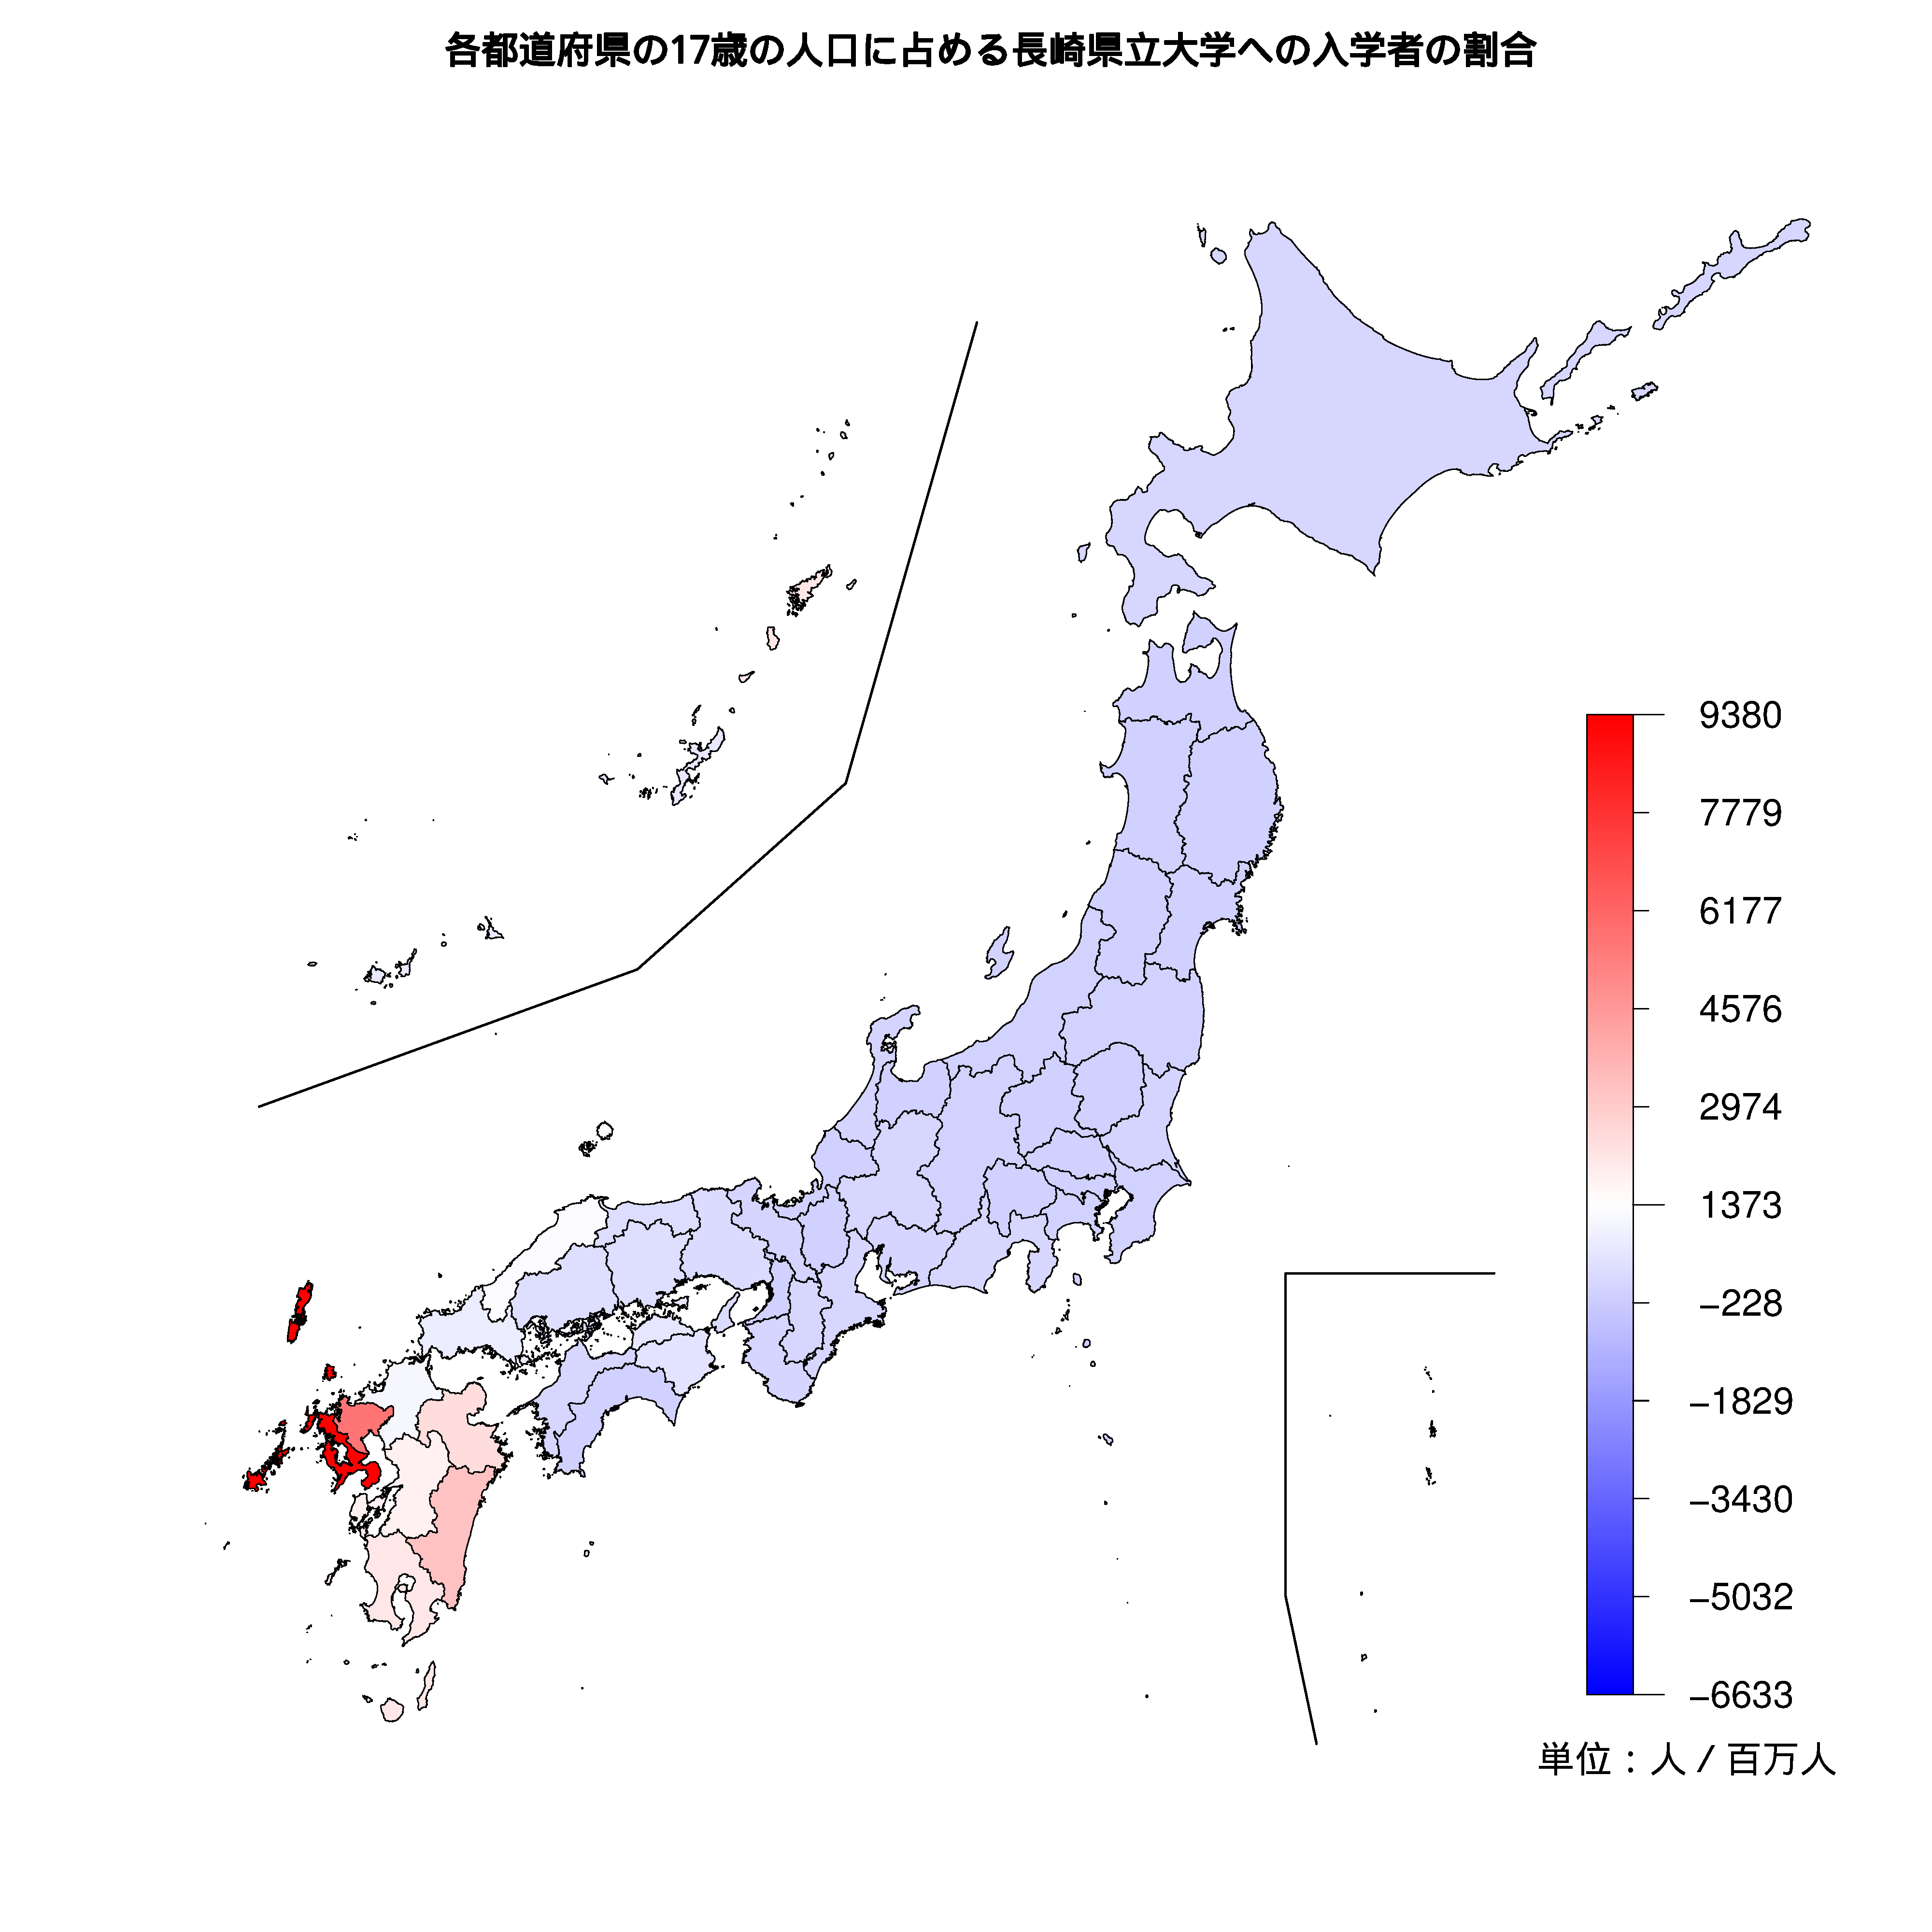 長崎県立大学への入学者が多い都道府県の色分け地図